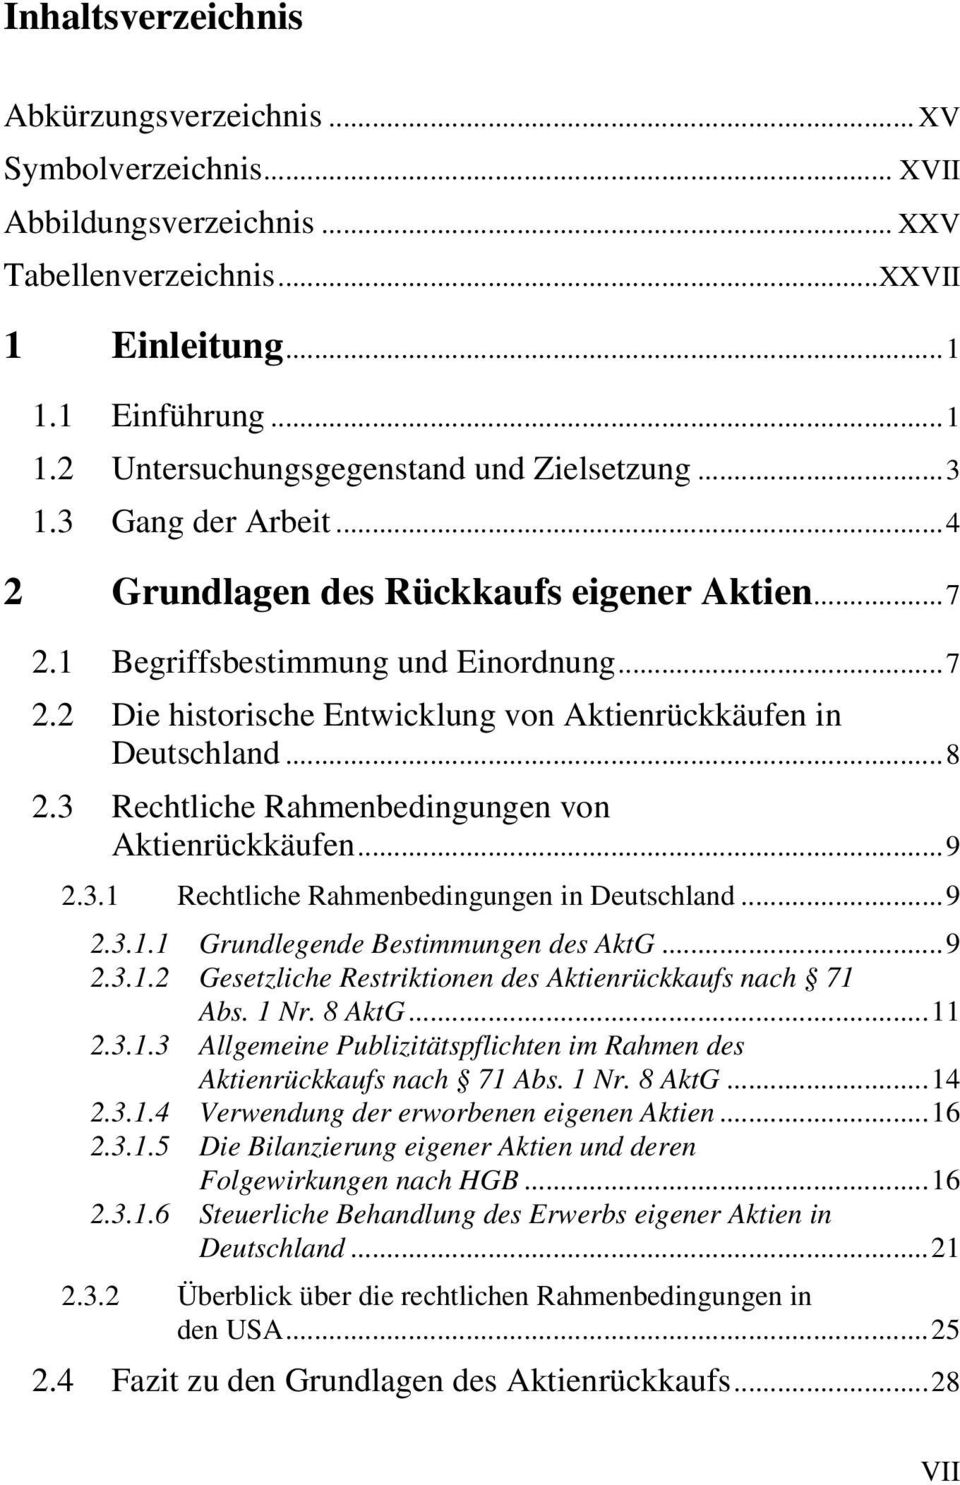 3 Rechtliche Rahmenbedingungen von Aktienrückkäufen...9 2.3.1 Rechtliche Rahmenbedingungen in Deutschland...9 2.3.1.1 Grundlegende Bestimmungen des AktG...9 2.3.1.2 Gesetzliche Restriktionen des Aktienrückkaufs nach 71 Abs.